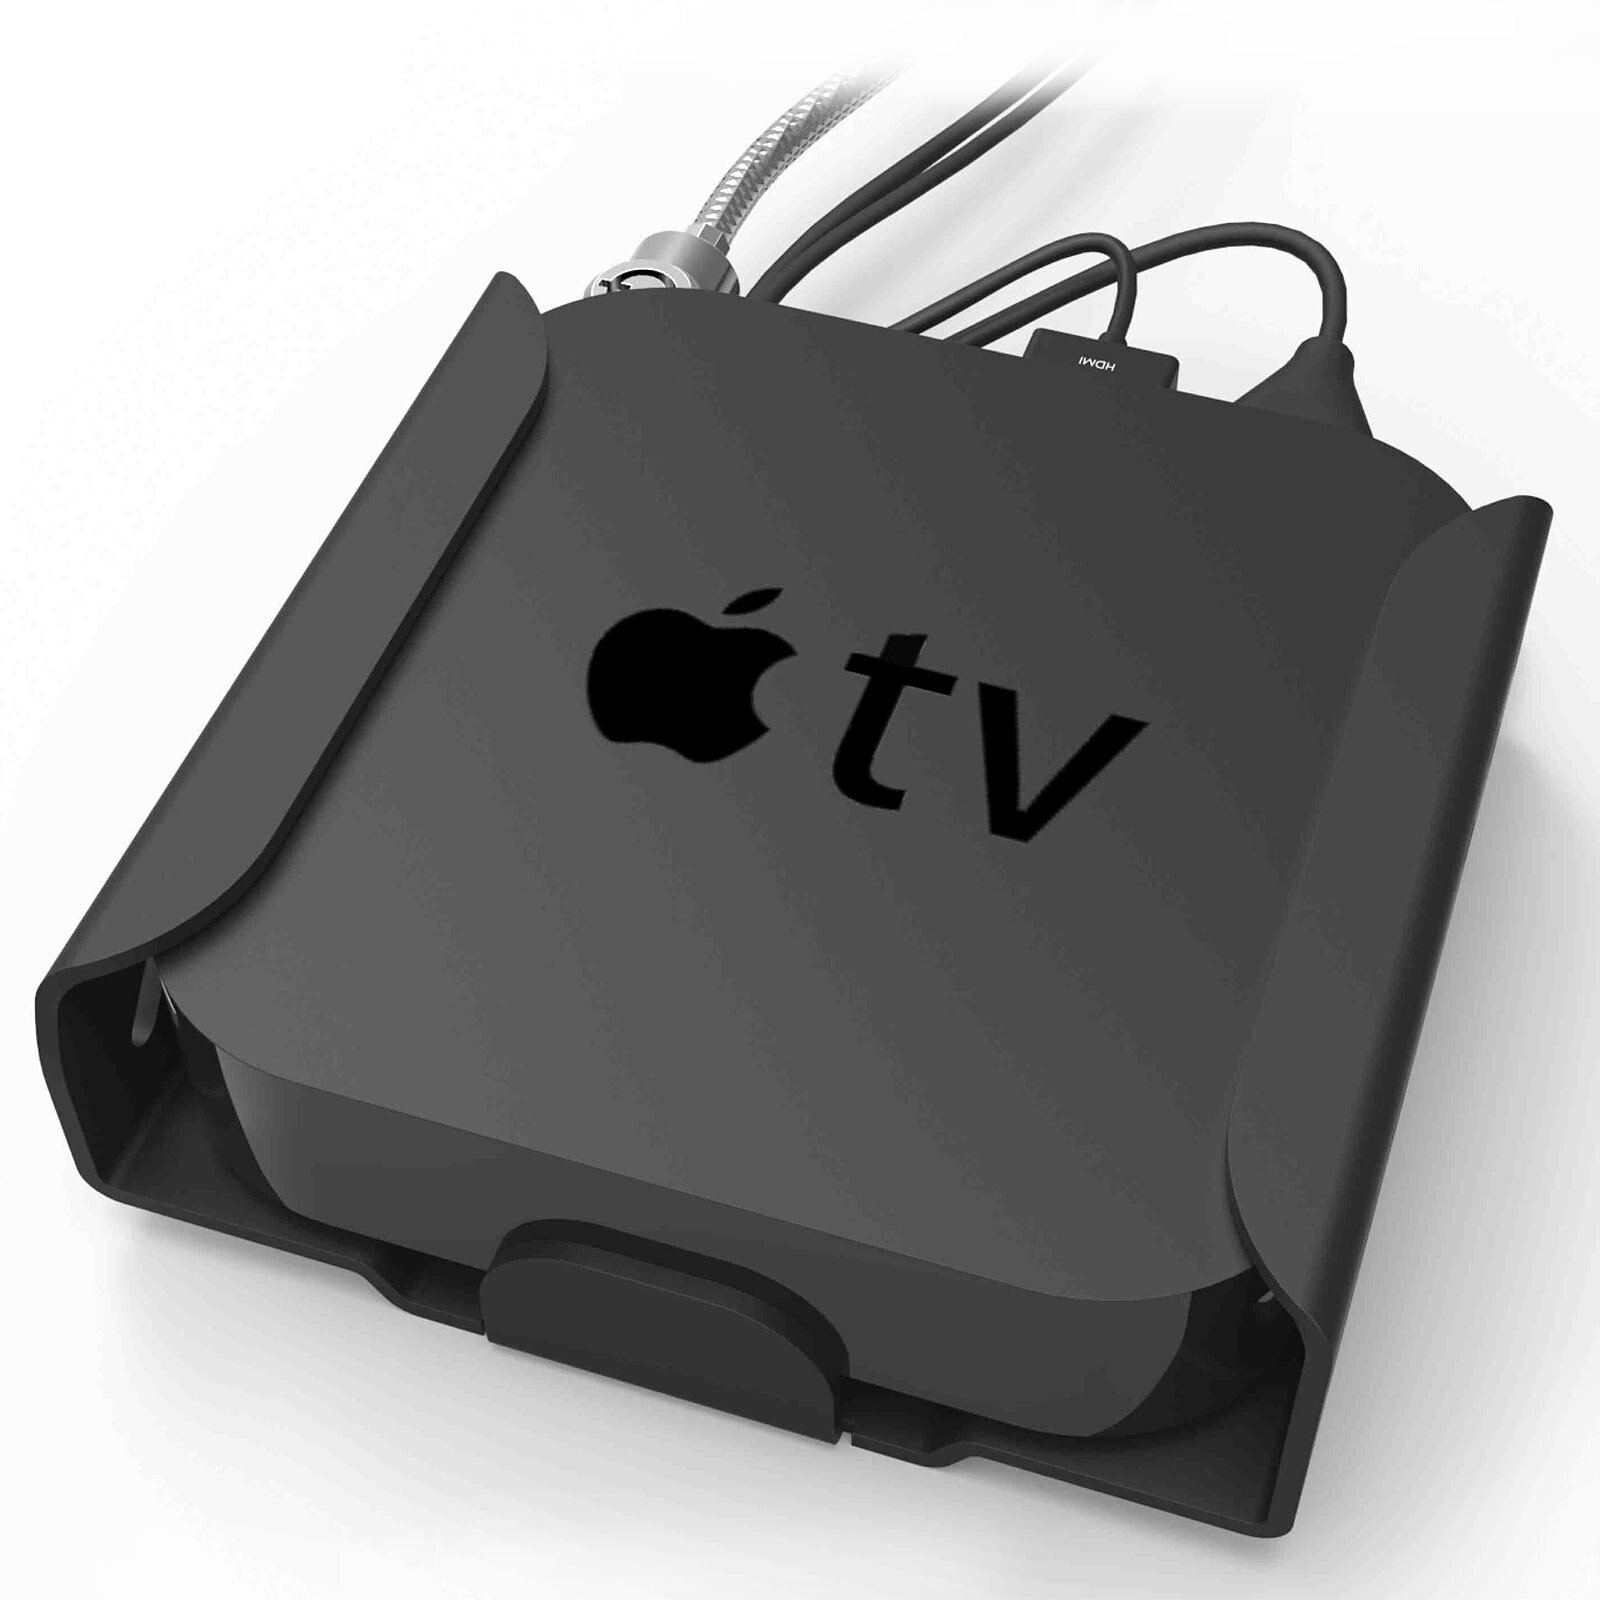 Socle antivol Apple TV